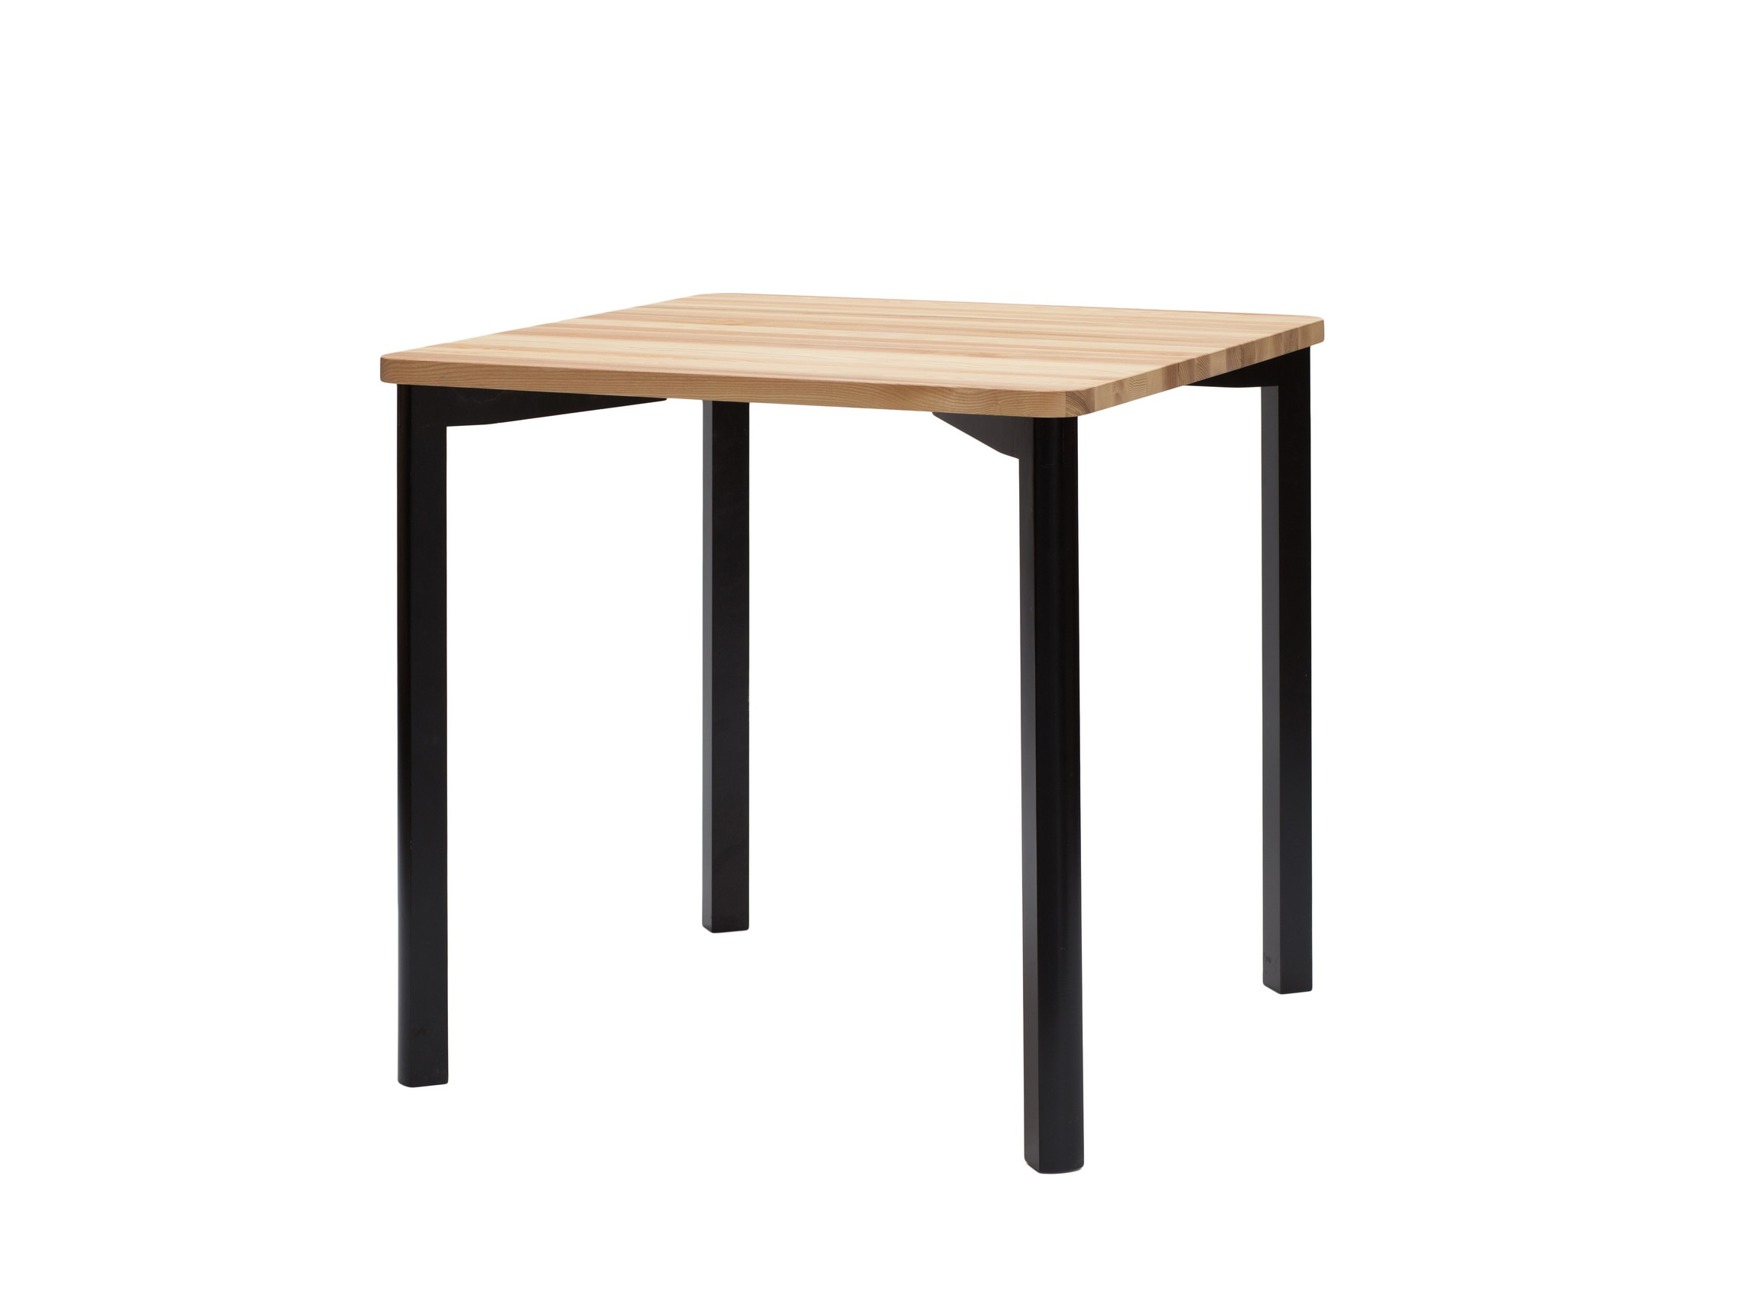 Kwadratowy stół do kuchni, jadalni, salonu z drewnianym jesionowym blatem i czarnymi nogami